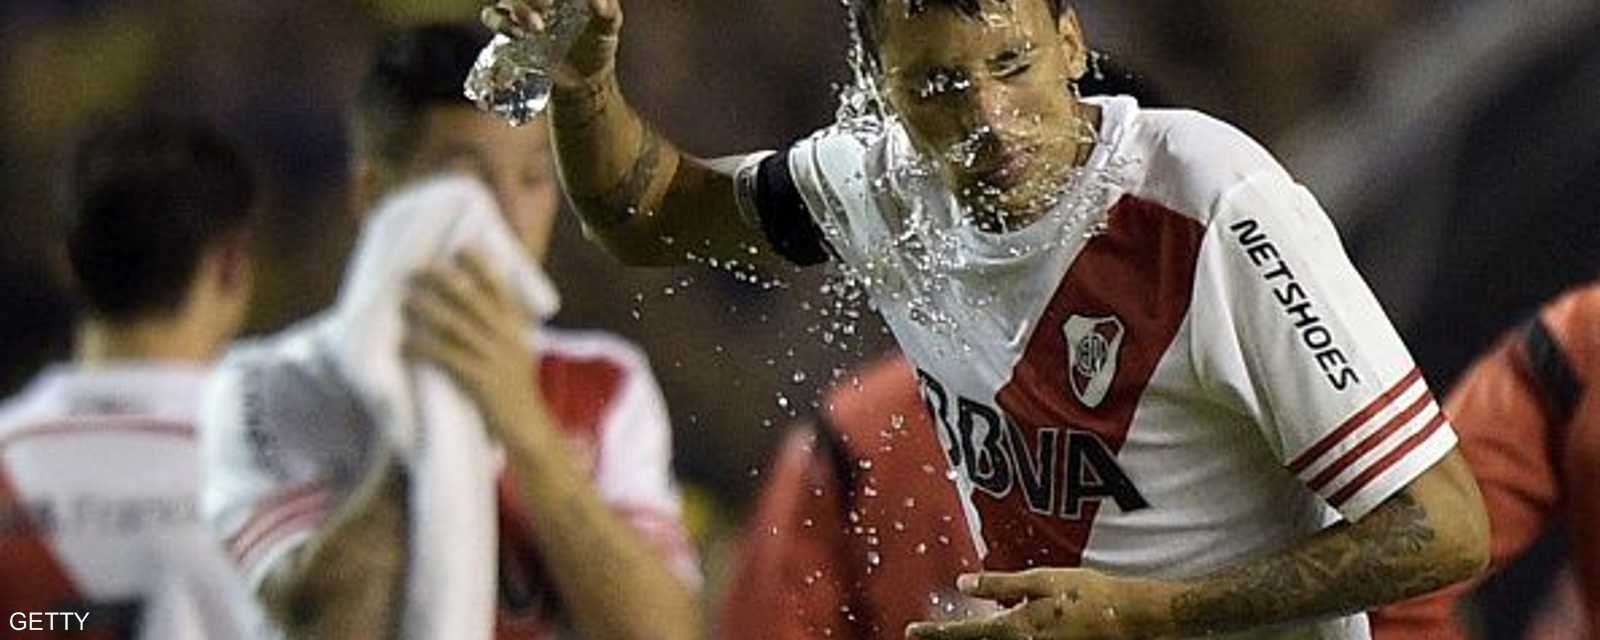 لاعب من ريفر بليت يغسل وجهه بالماء قبل قرار إلغاء المباراة أمام بوكا جونيورز